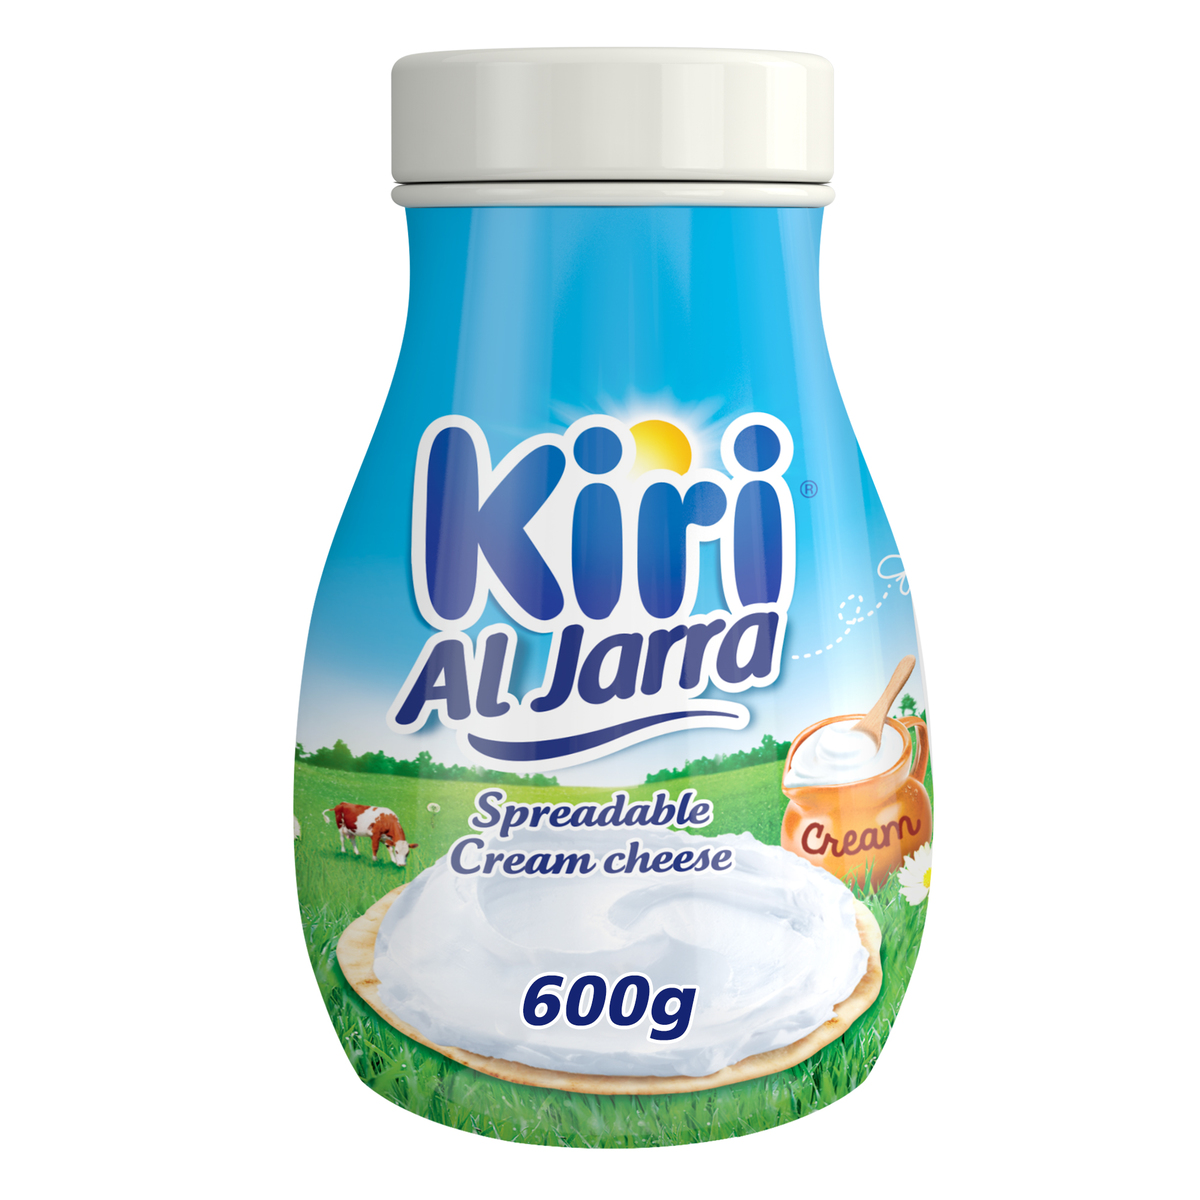 Buy Kiri Jarra Spreadable Cream Cheese Jar 600 g Online at Best Price | Jar Cheese | Lulu UAE in Saudi Arabia